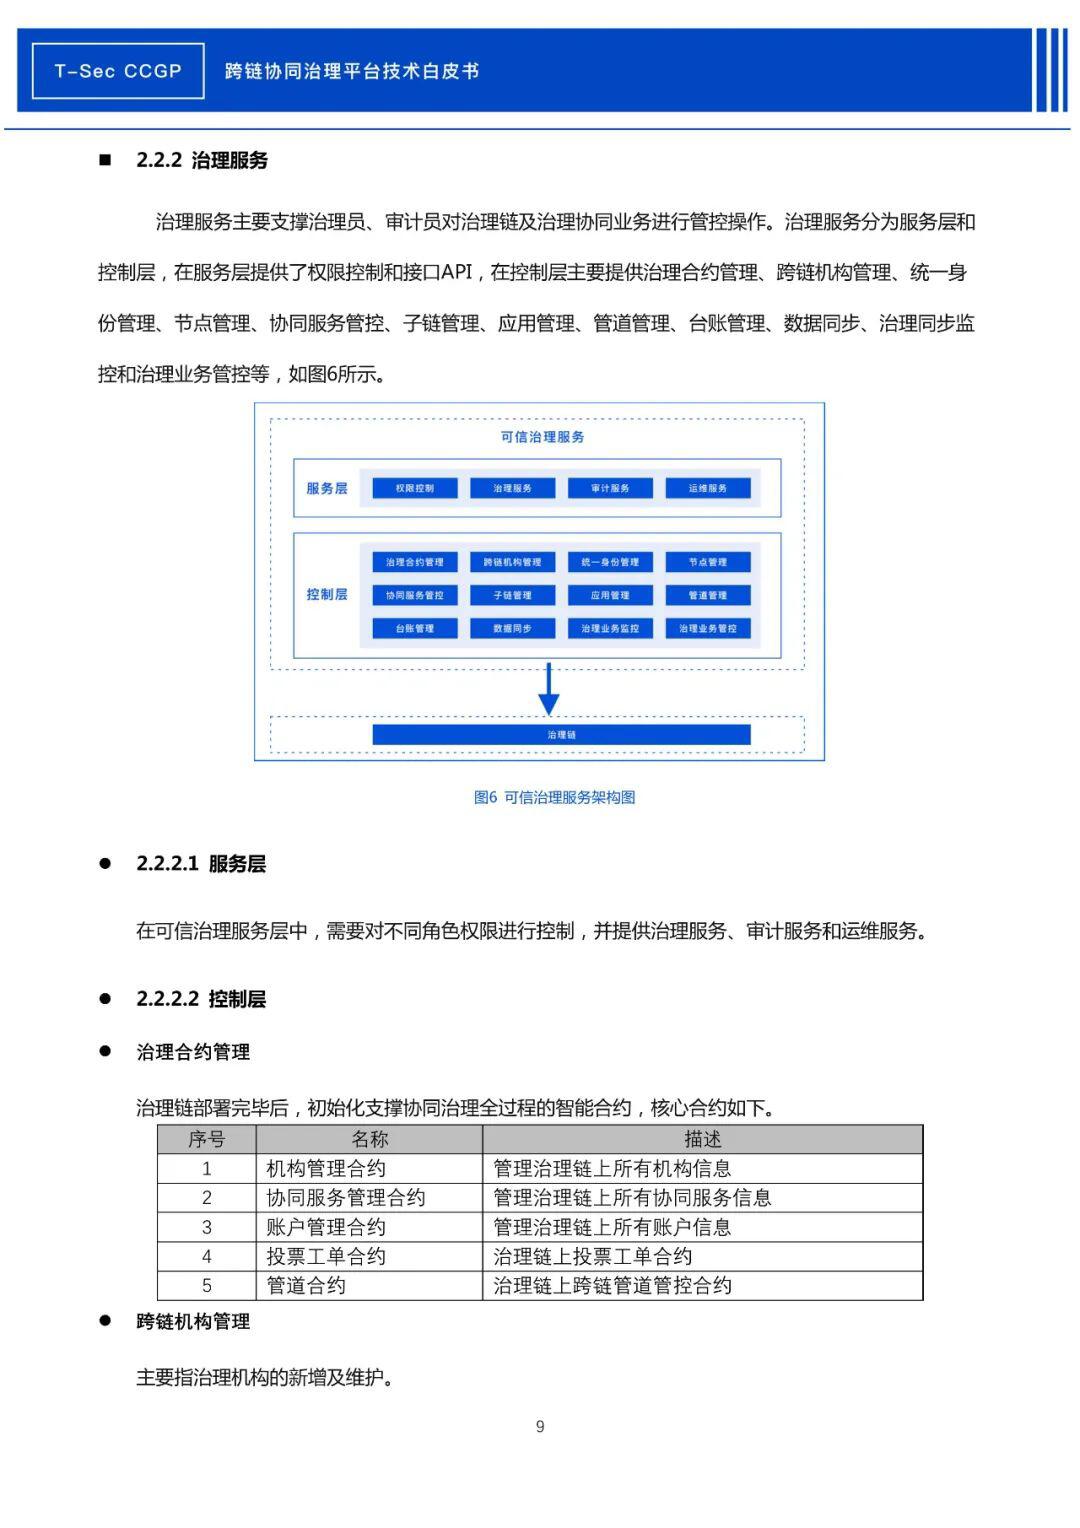 腾讯安全发布《CCGP跨链协同治理平台技术白皮书》